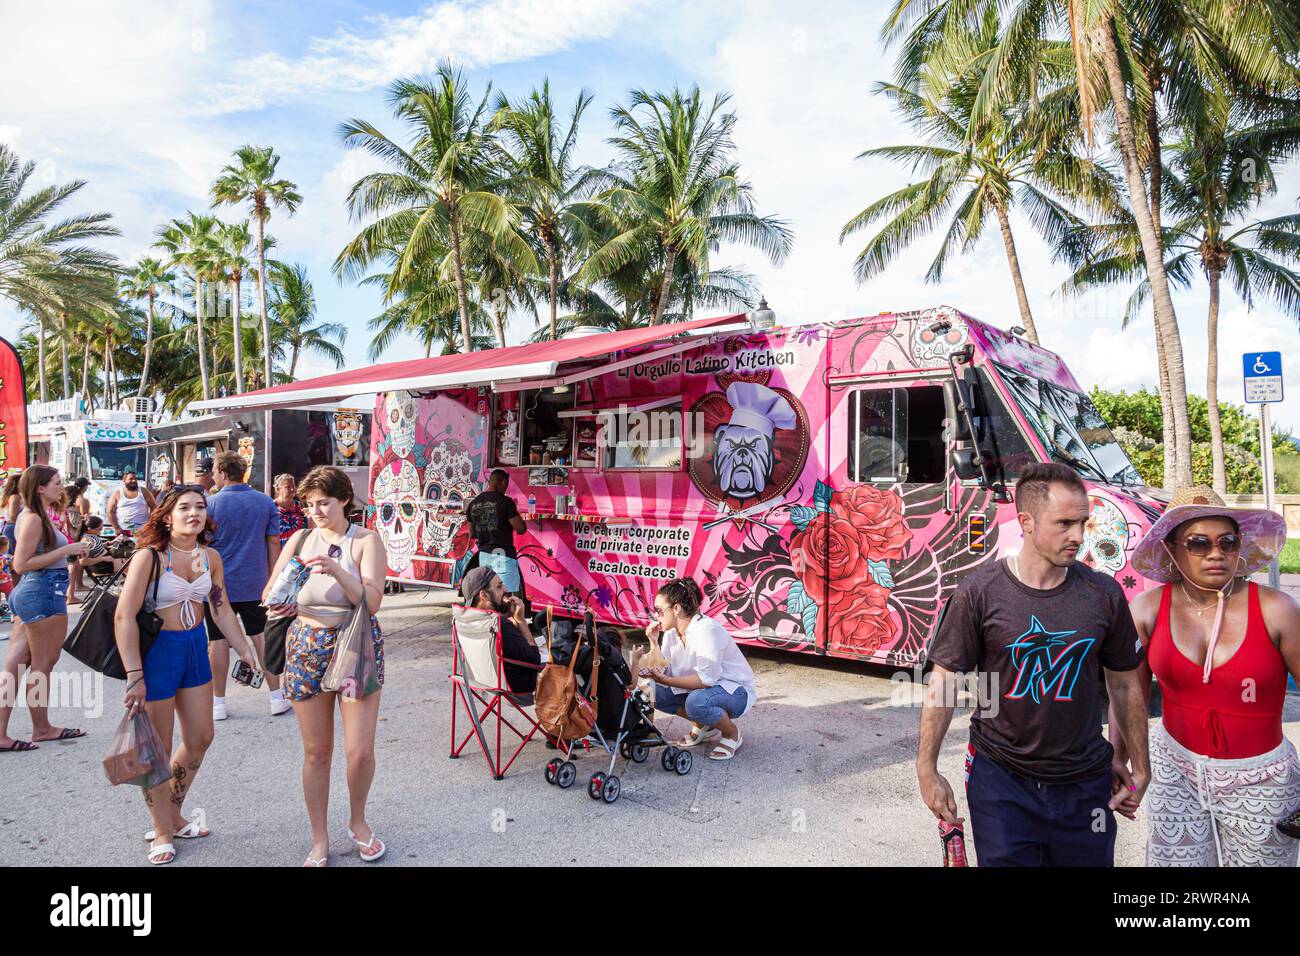 Miami Beach Floride, Ocean Terrace, quatrième activité de célébration du jour de l'indépendance du 4 juillet, food trucks, homme homme homme, femme femme femme femme femme femme, adul Banque D'Images